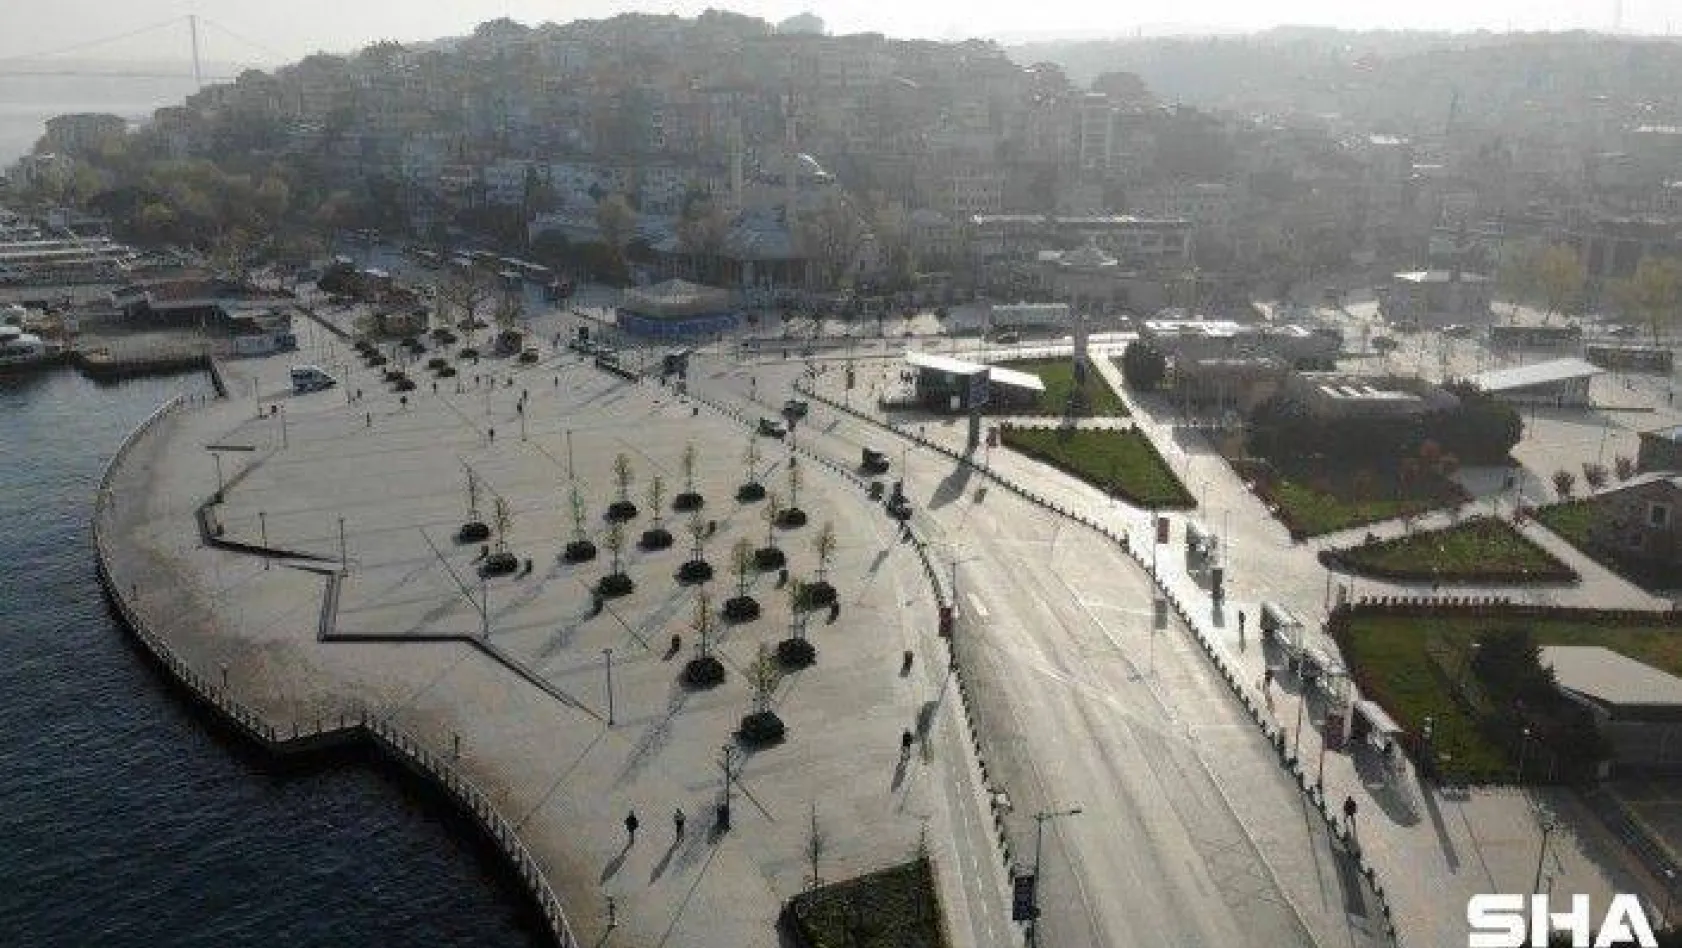 Tam kapanma sonrası Kadıköy ve Üsküdar'da meydanlar sessizliğe büründü